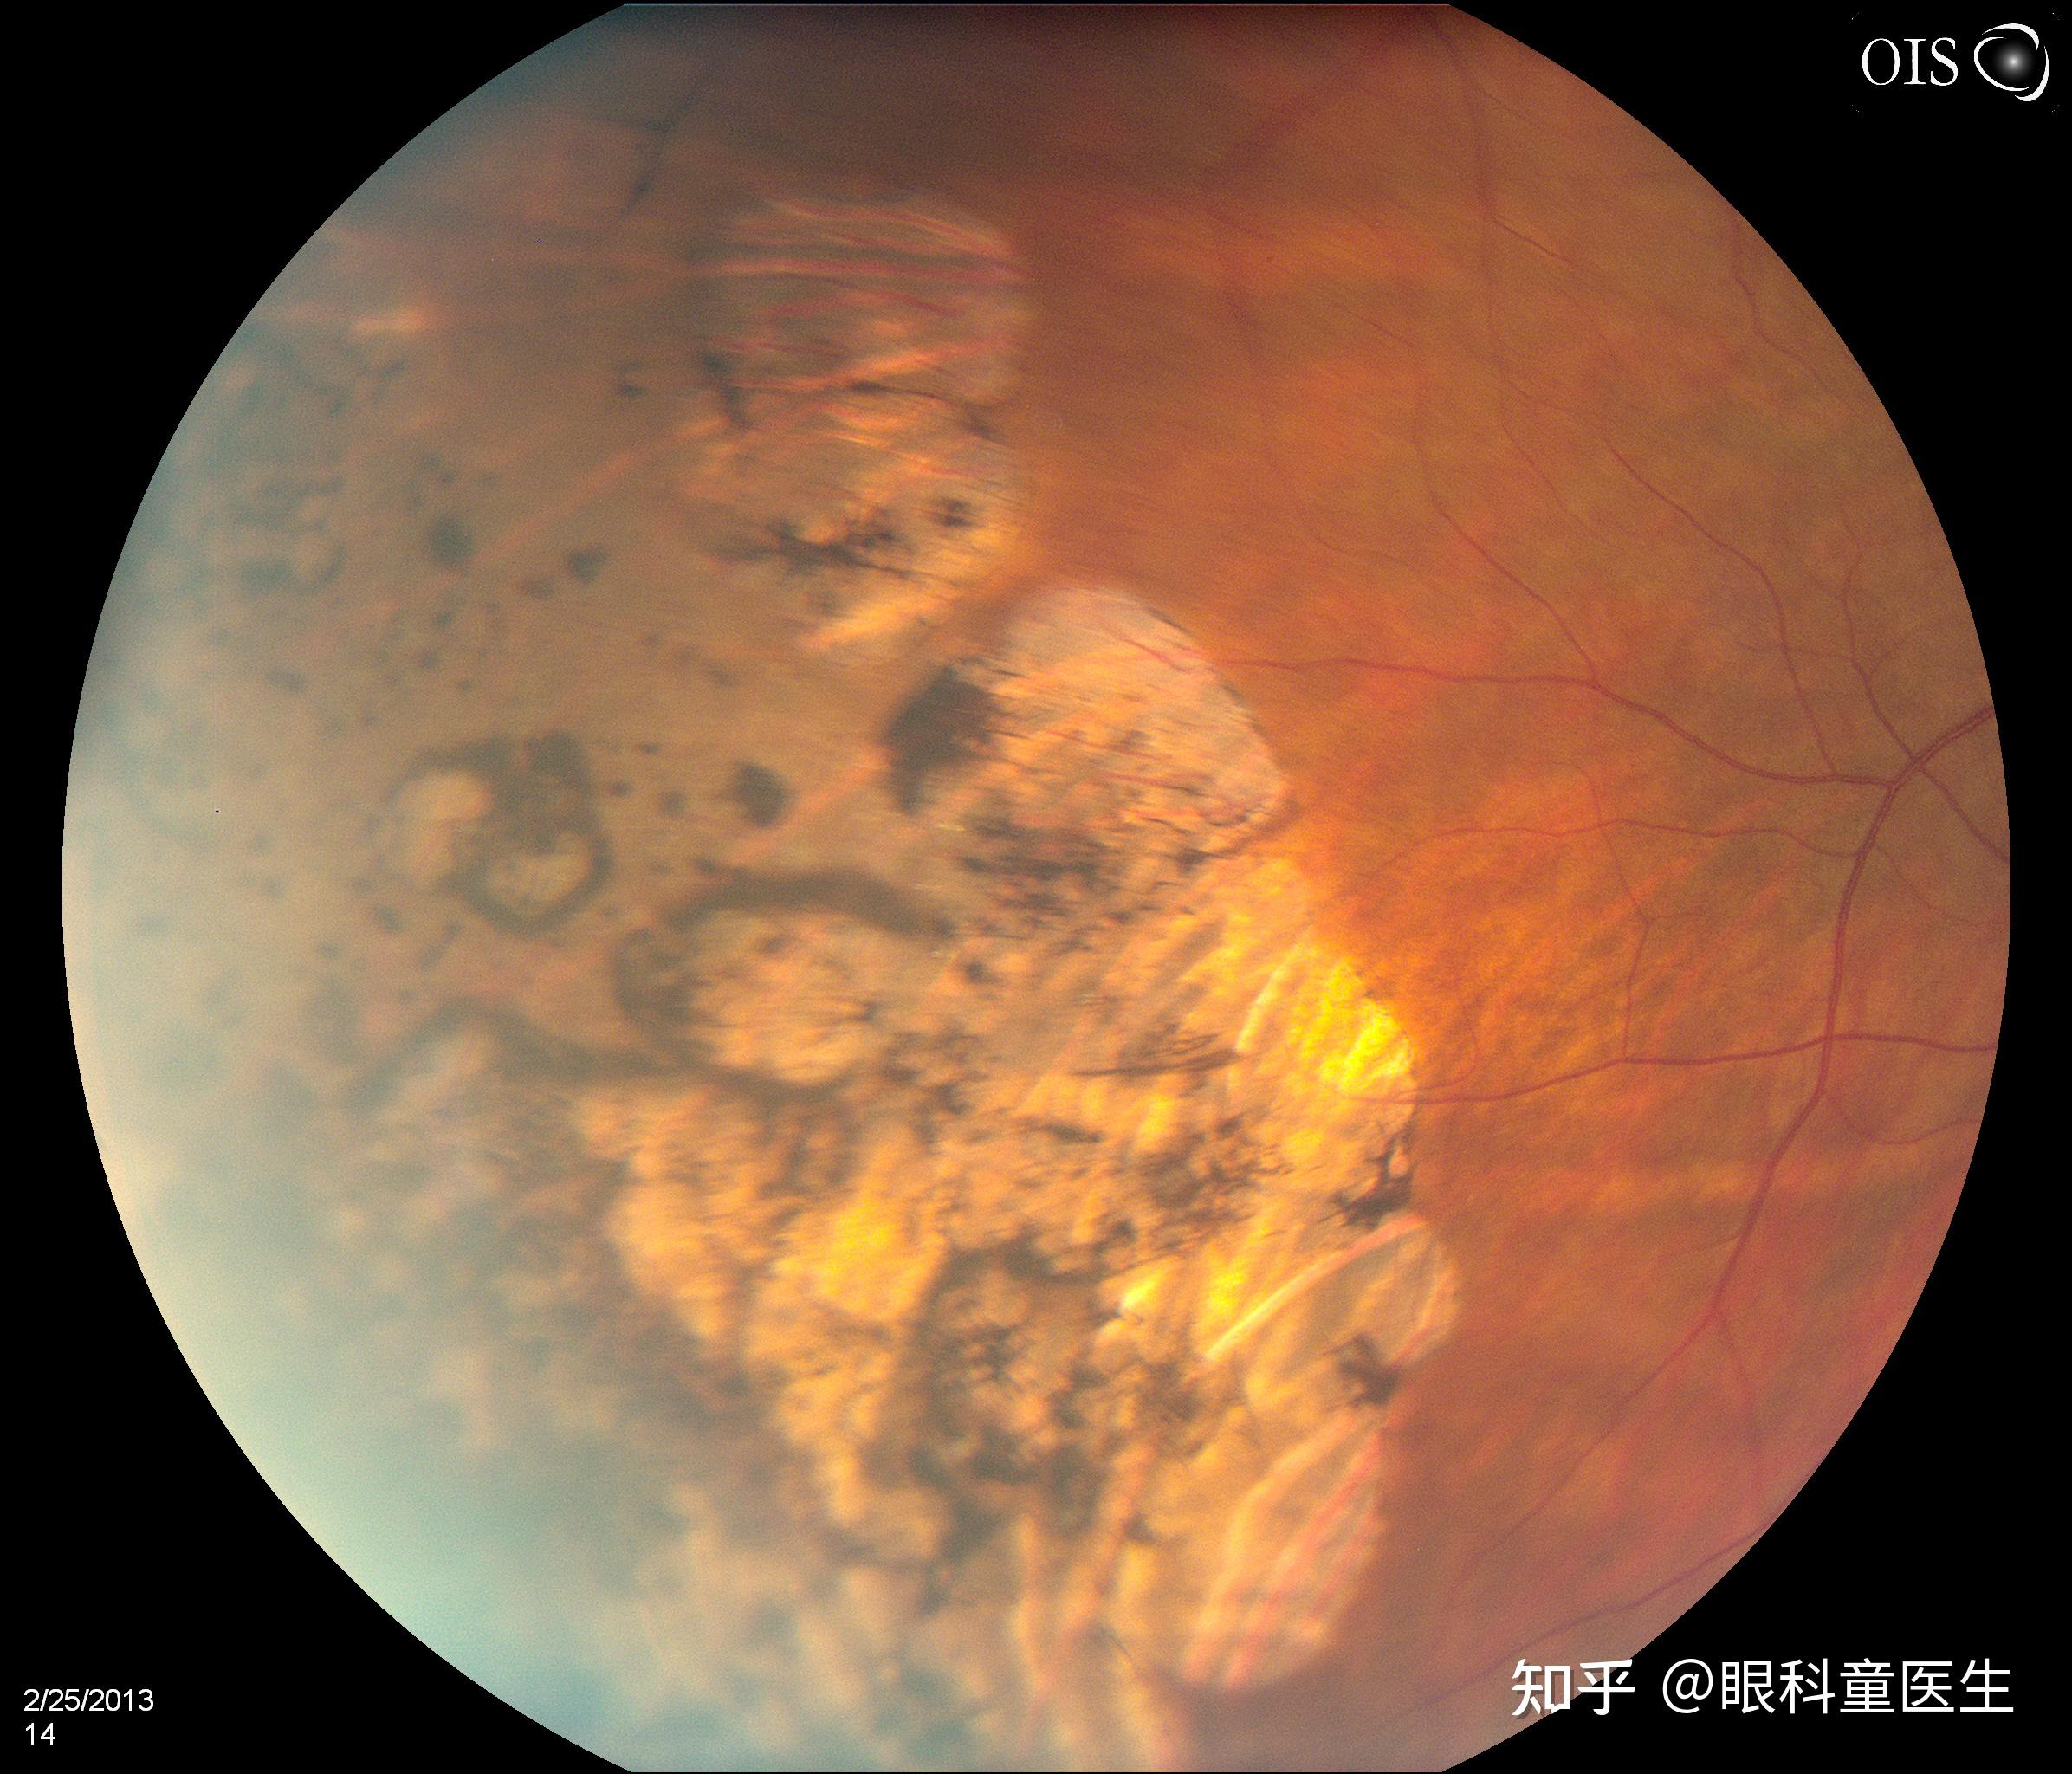 同济大学附属同济医院眼科为一孔源性视网膜脱离患者带来光明-医院汇-丁香园